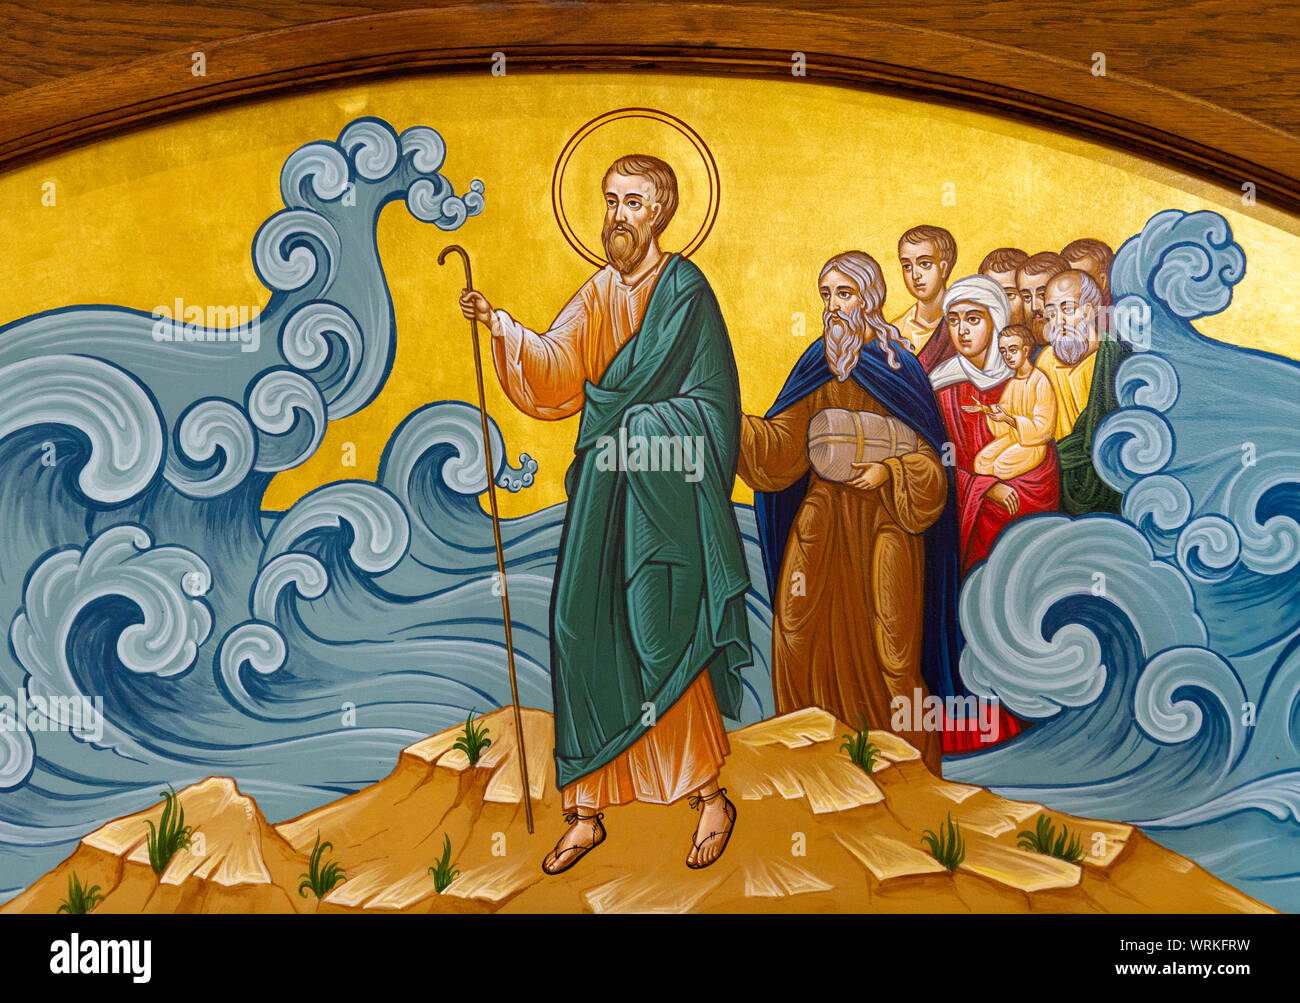 Das Symbol für den Durchzug durch das Rote Meer - Mose die Israeliten durch das Meer von Schilf. Die griechisch-katholische Kirche von Saint Elia. Stockfoto